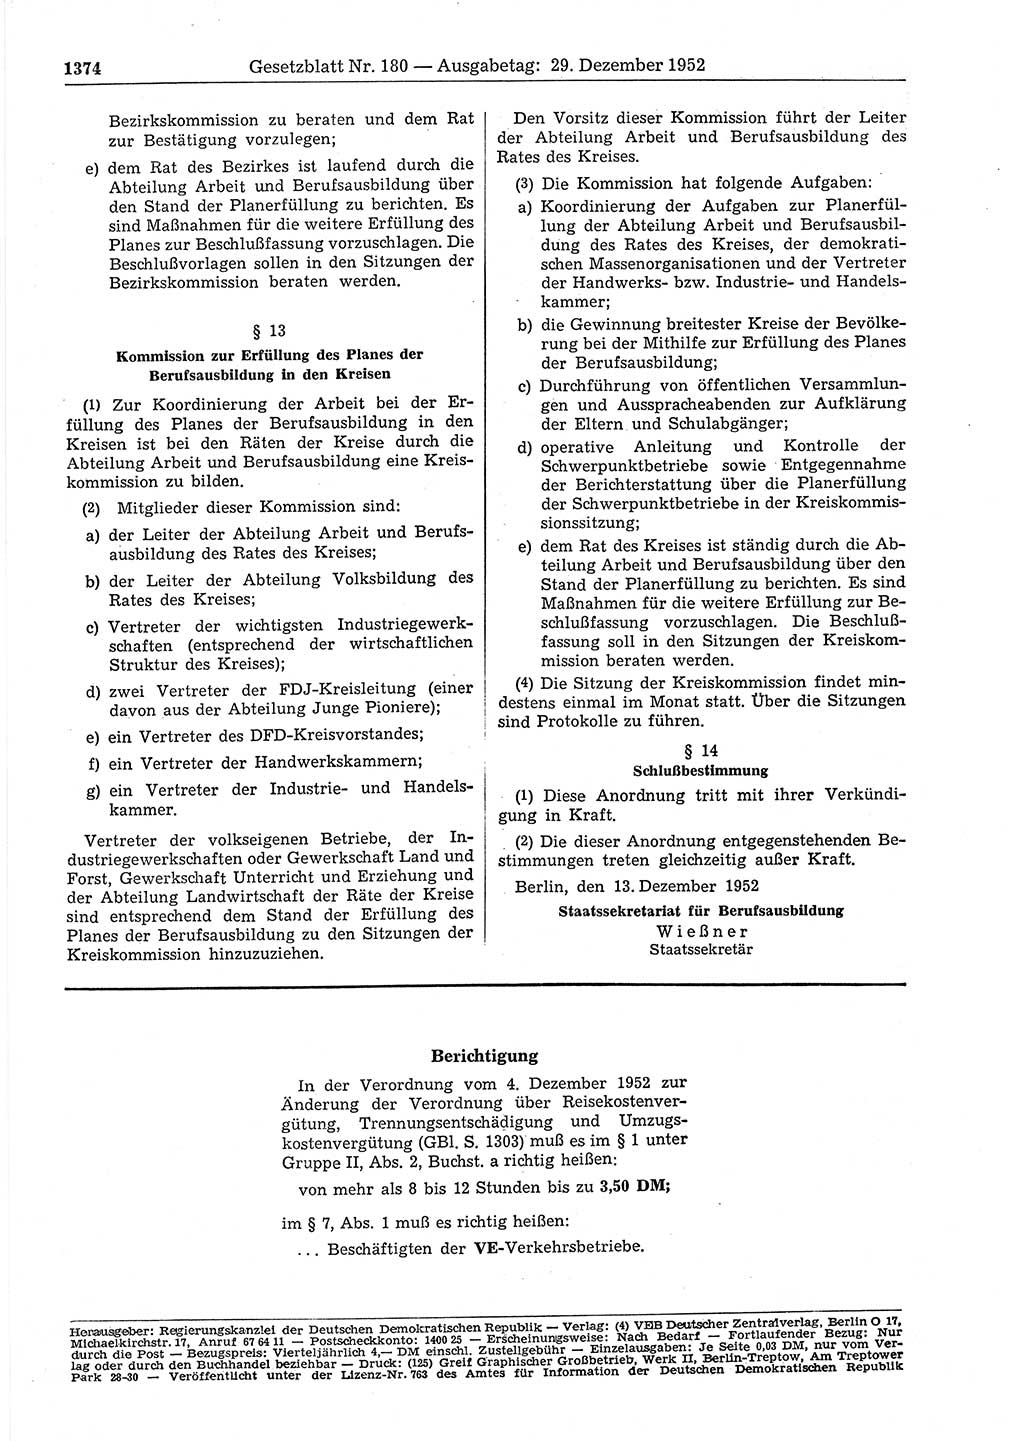 Gesetzblatt (GBl.) der Deutschen Demokratischen Republik (DDR) 1952, Seite 1374 (GBl. DDR 1952, S. 1374)